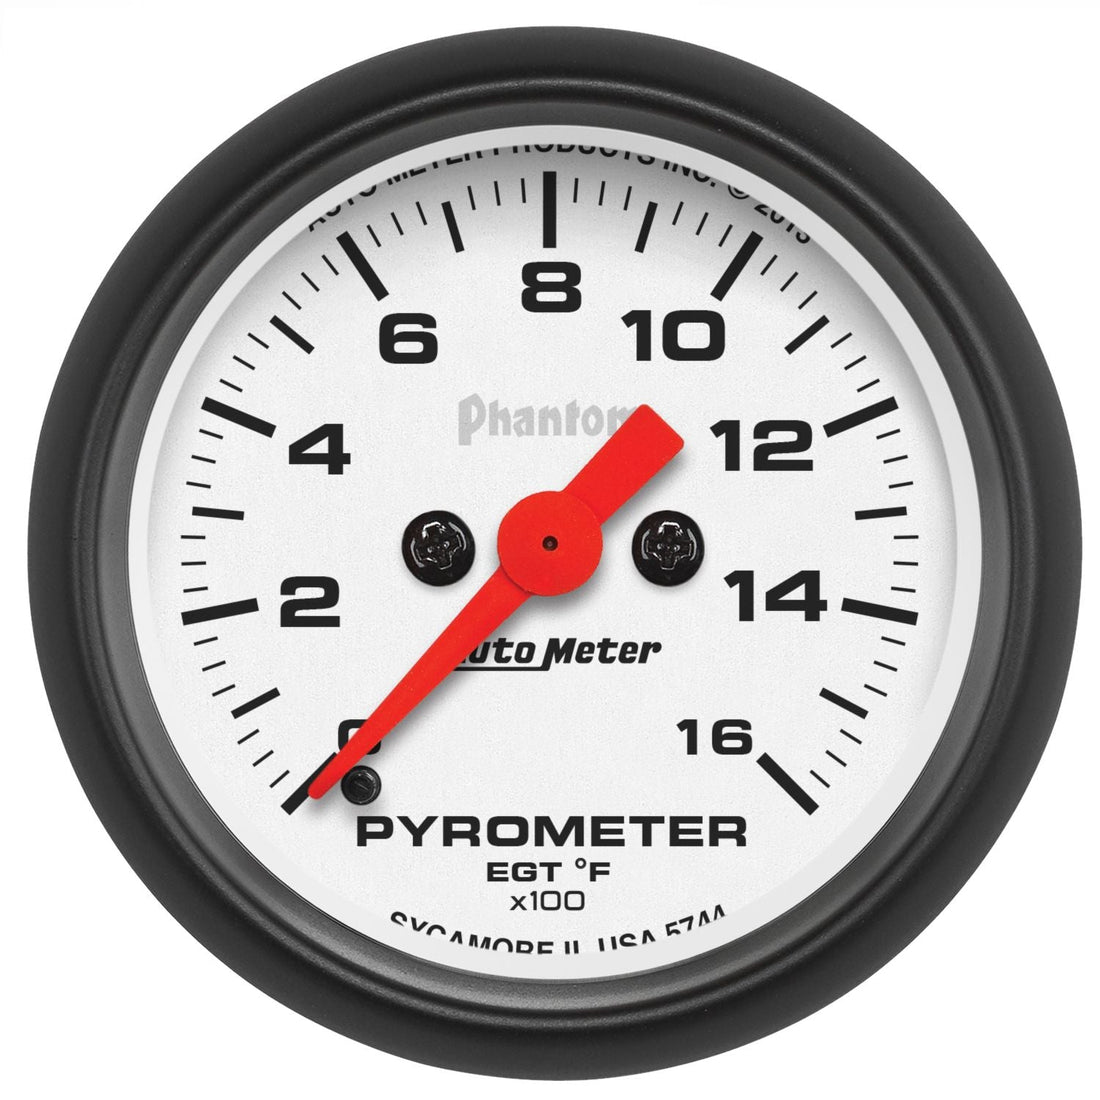 2-1/16" Pyrometer Gauge Kit, 0-1600 °F, Stepper motor, phantom - Diesel Freak